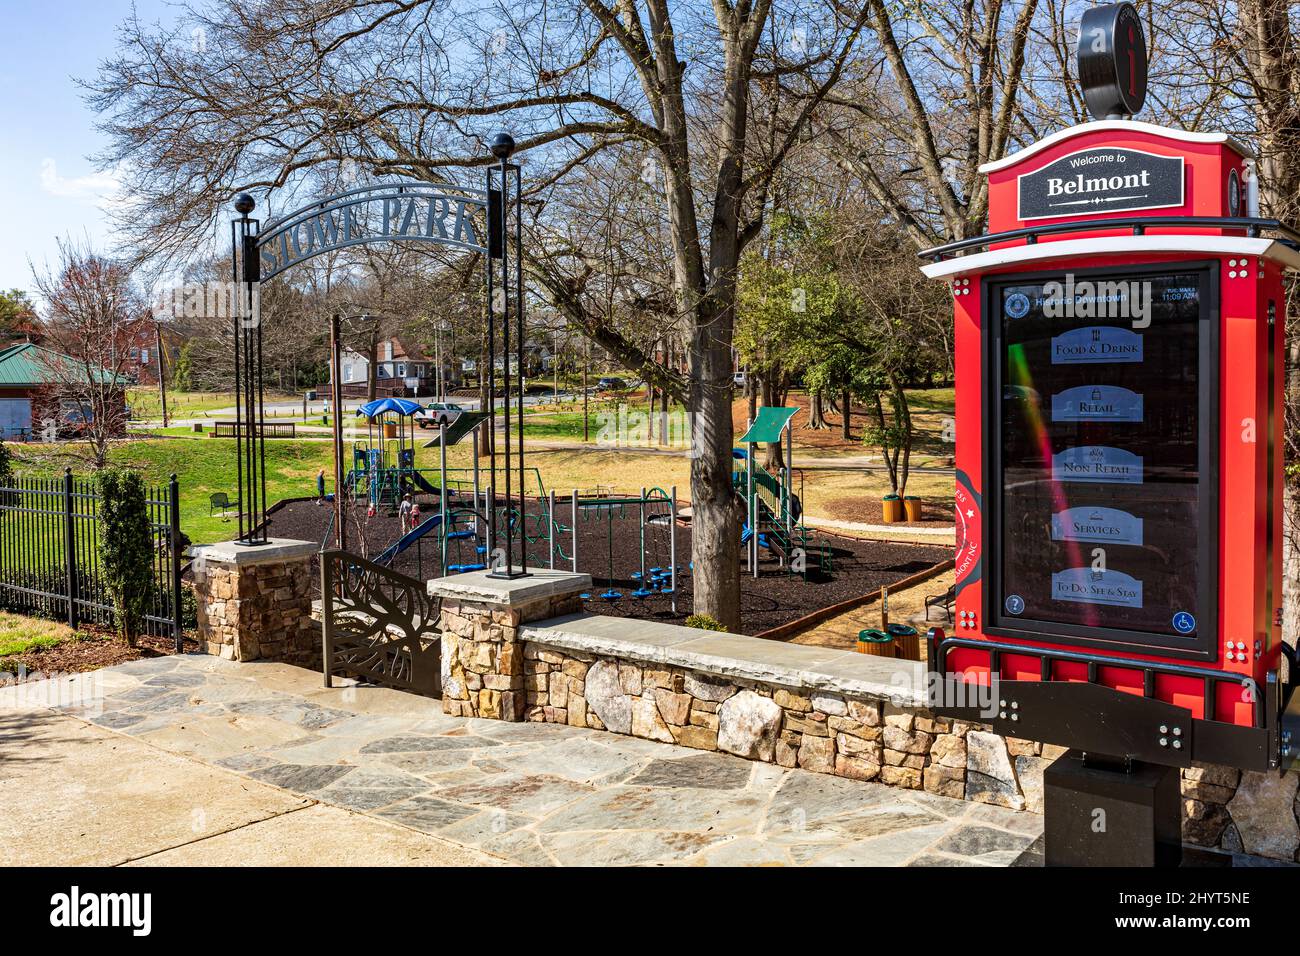 BELMONT, NC, USA-8 MARZO 2022: Stowe Park in centro. Mostra il parco giochi per bambini, il cartello con l'arco sull'ingresso e il chiosco informativo Foto Stock